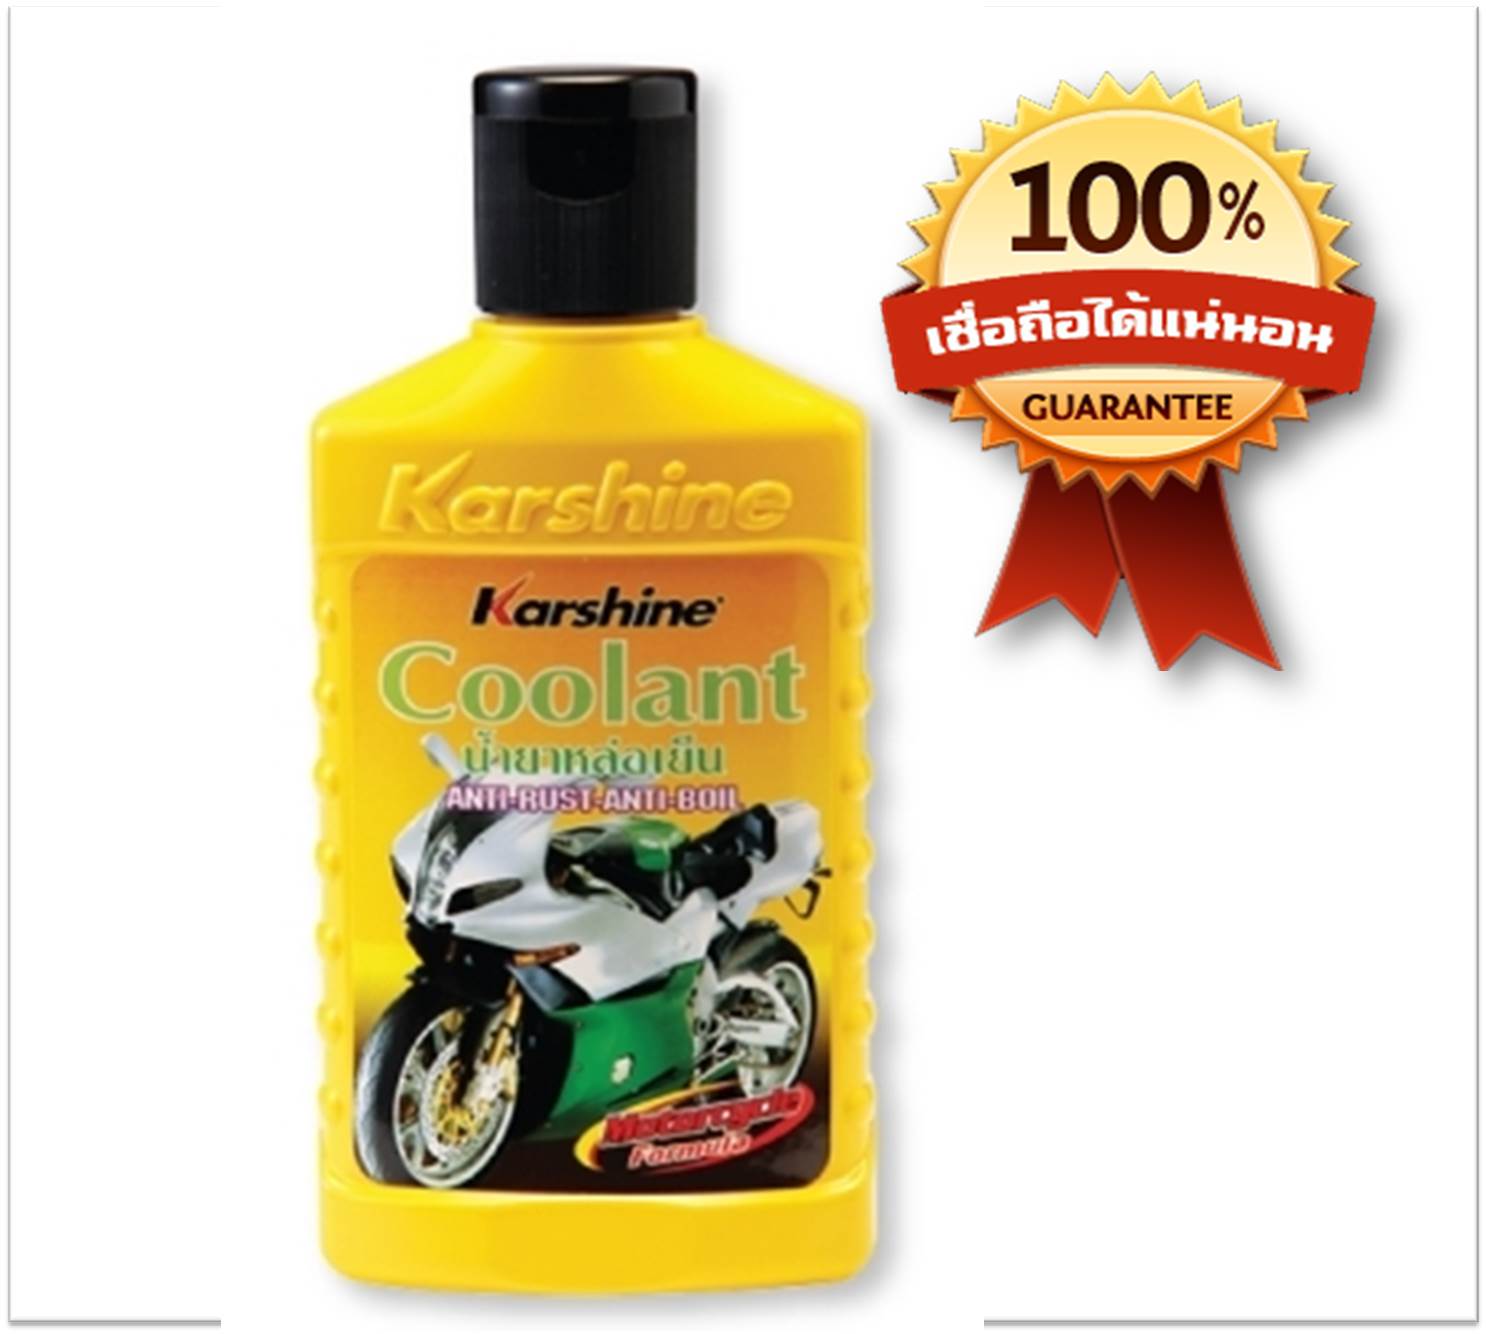 Karshine Coolant น้ำยาหล่อเย็น น้ำยาเติมกันสนิมหม้อน้ำสำหรับรถมอเตอร์ไซด์โดยเฉพาะขนาด 150 ml